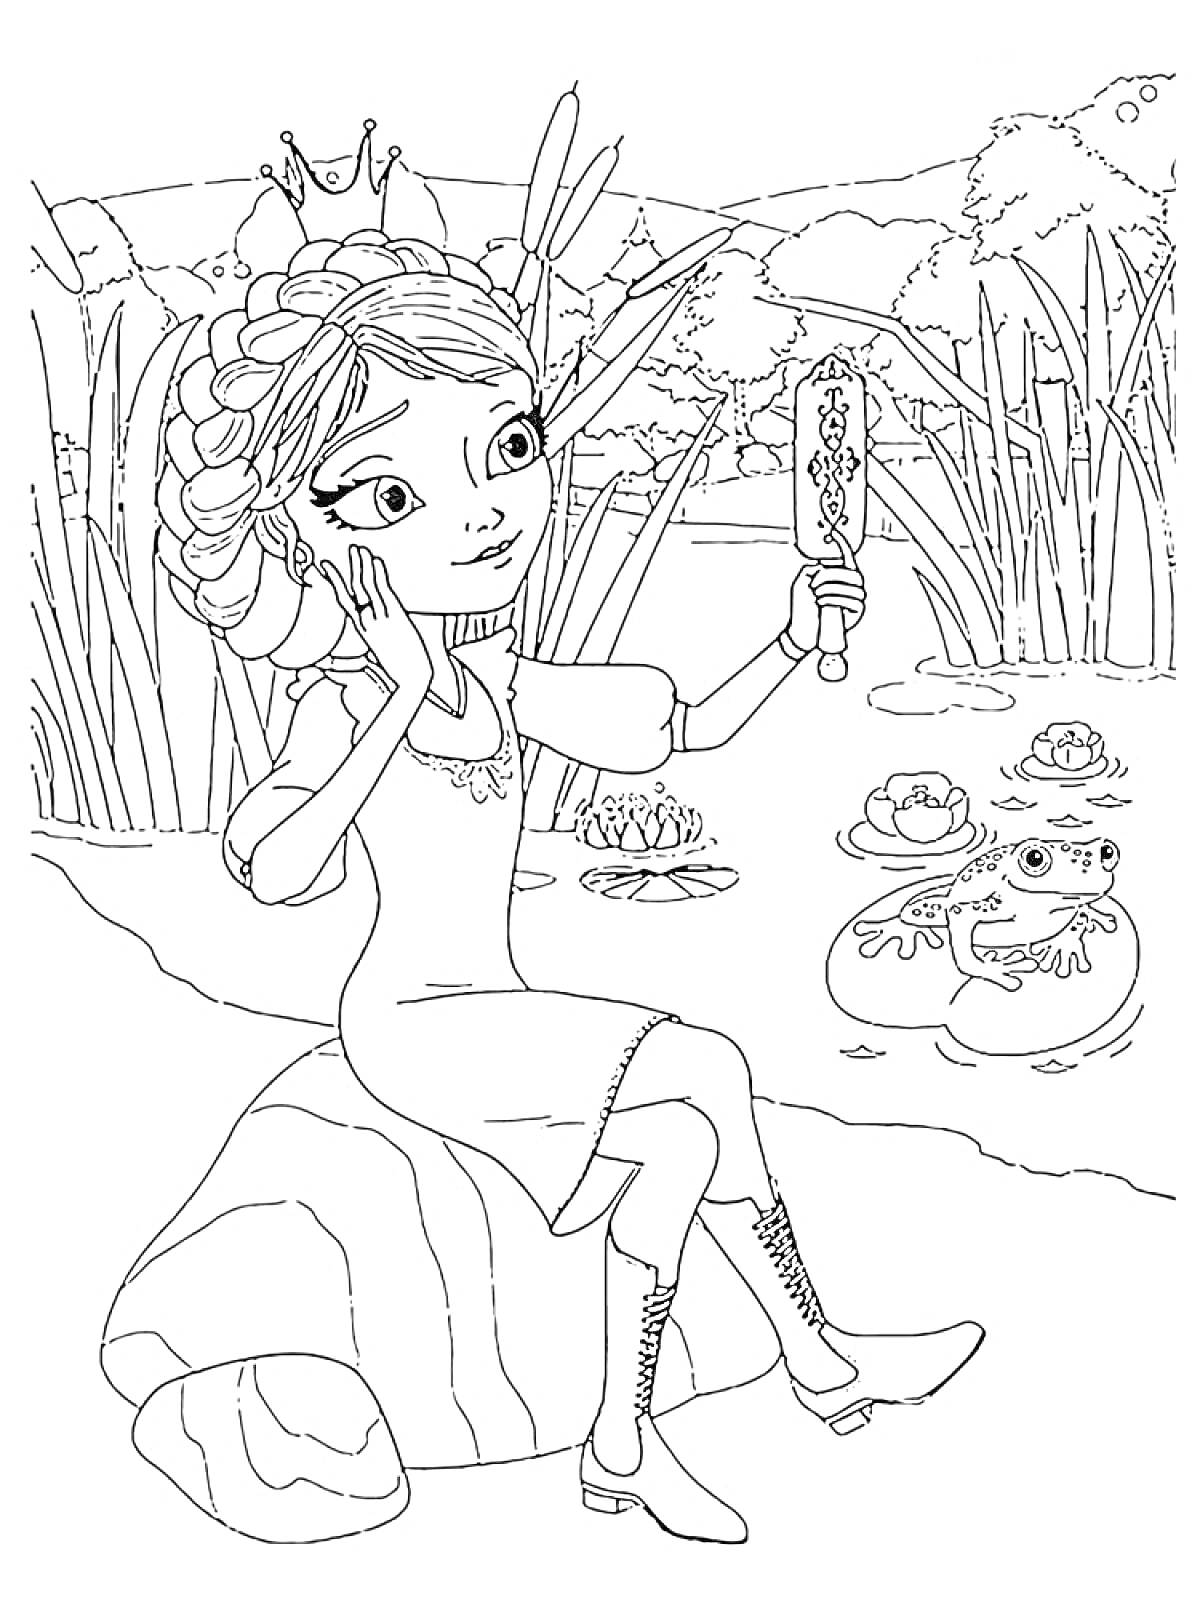 Принцесса у пруда с зеркалом, смотрящая на лягушек